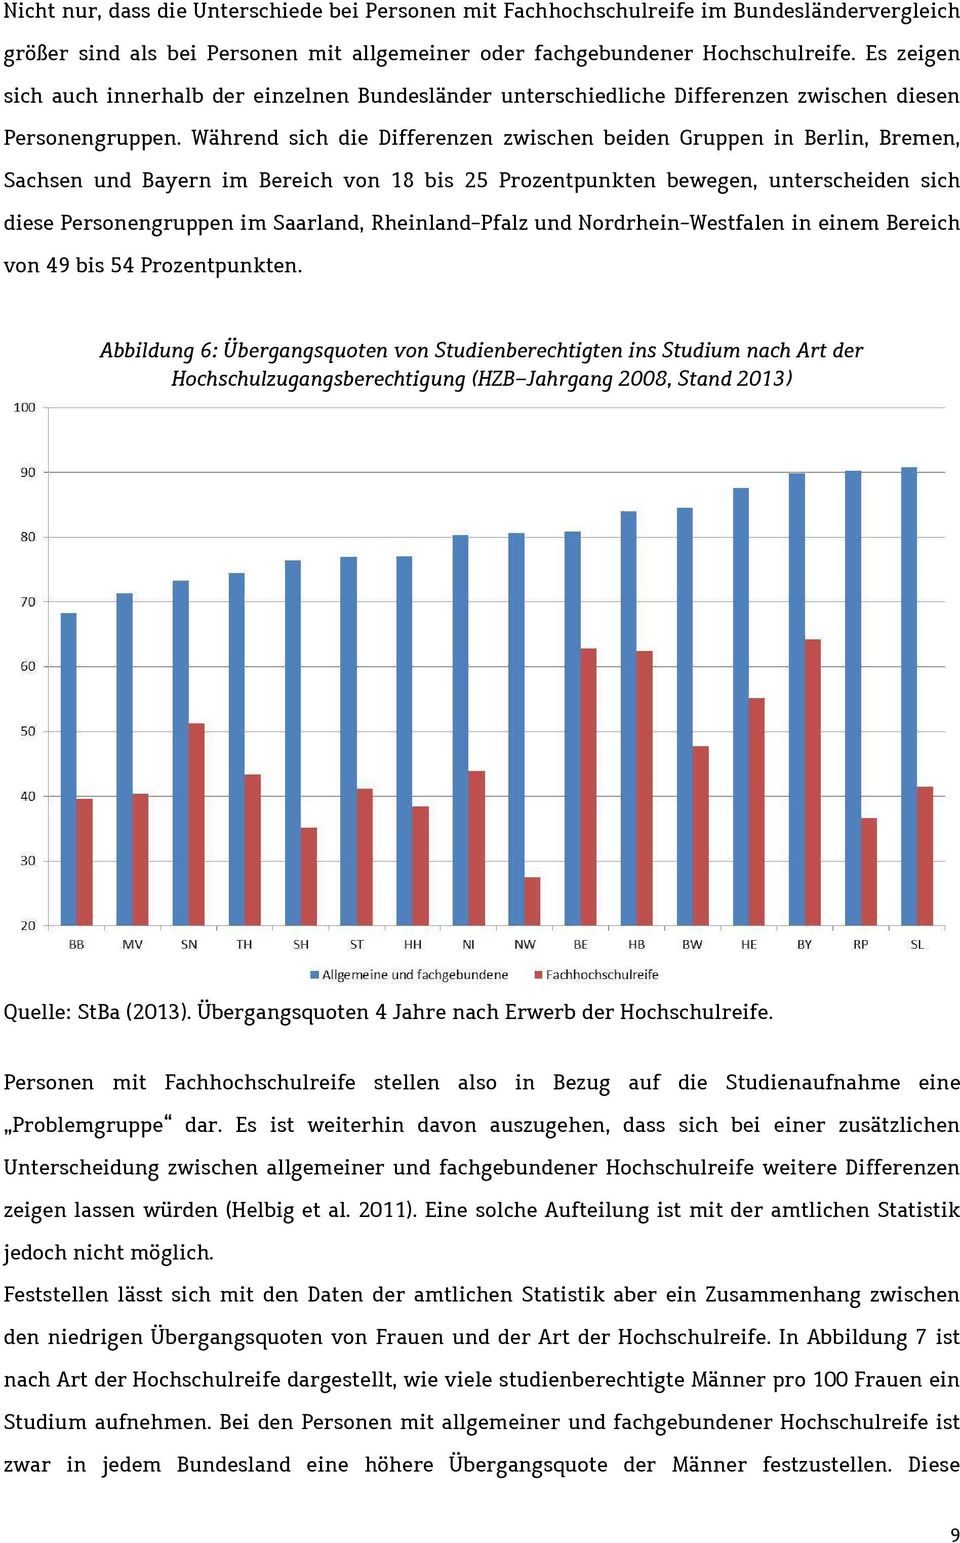 Während sich die Differenzen zwischen beiden Gruppen in Berlin, Bremen, Sachsen und Bayern im Bereich von 18 bis 25 Prozentpunkten bewegen, unterscheiden sich diese Personengruppen im Saarland,